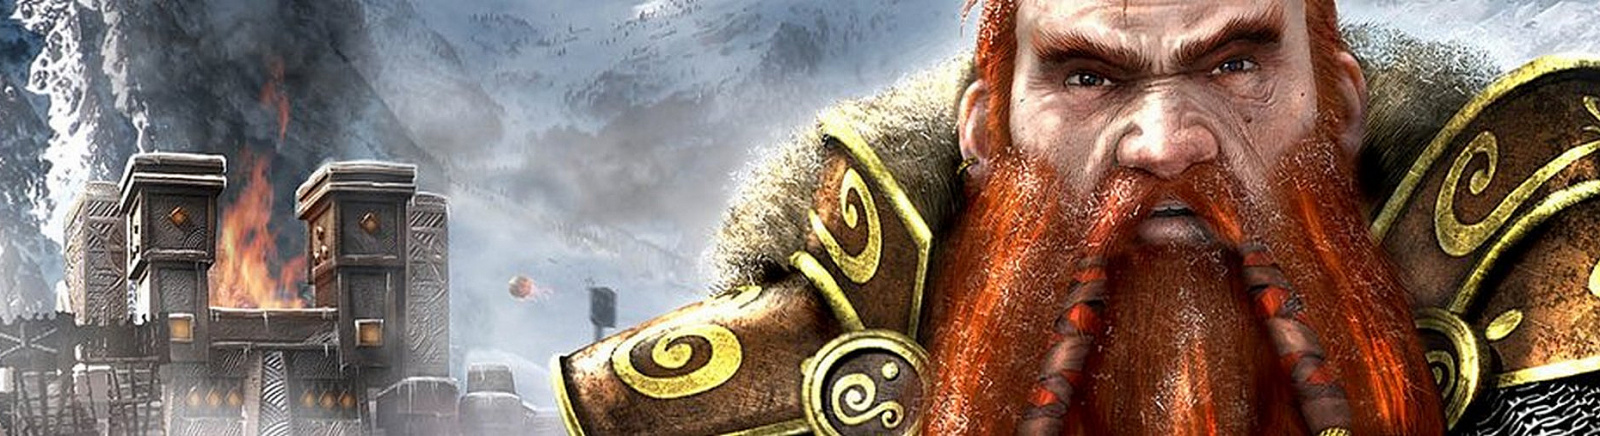 Дата выхода Heroes of Might and Magic 5: Hammers of Fate  на PC в России и во всем мире